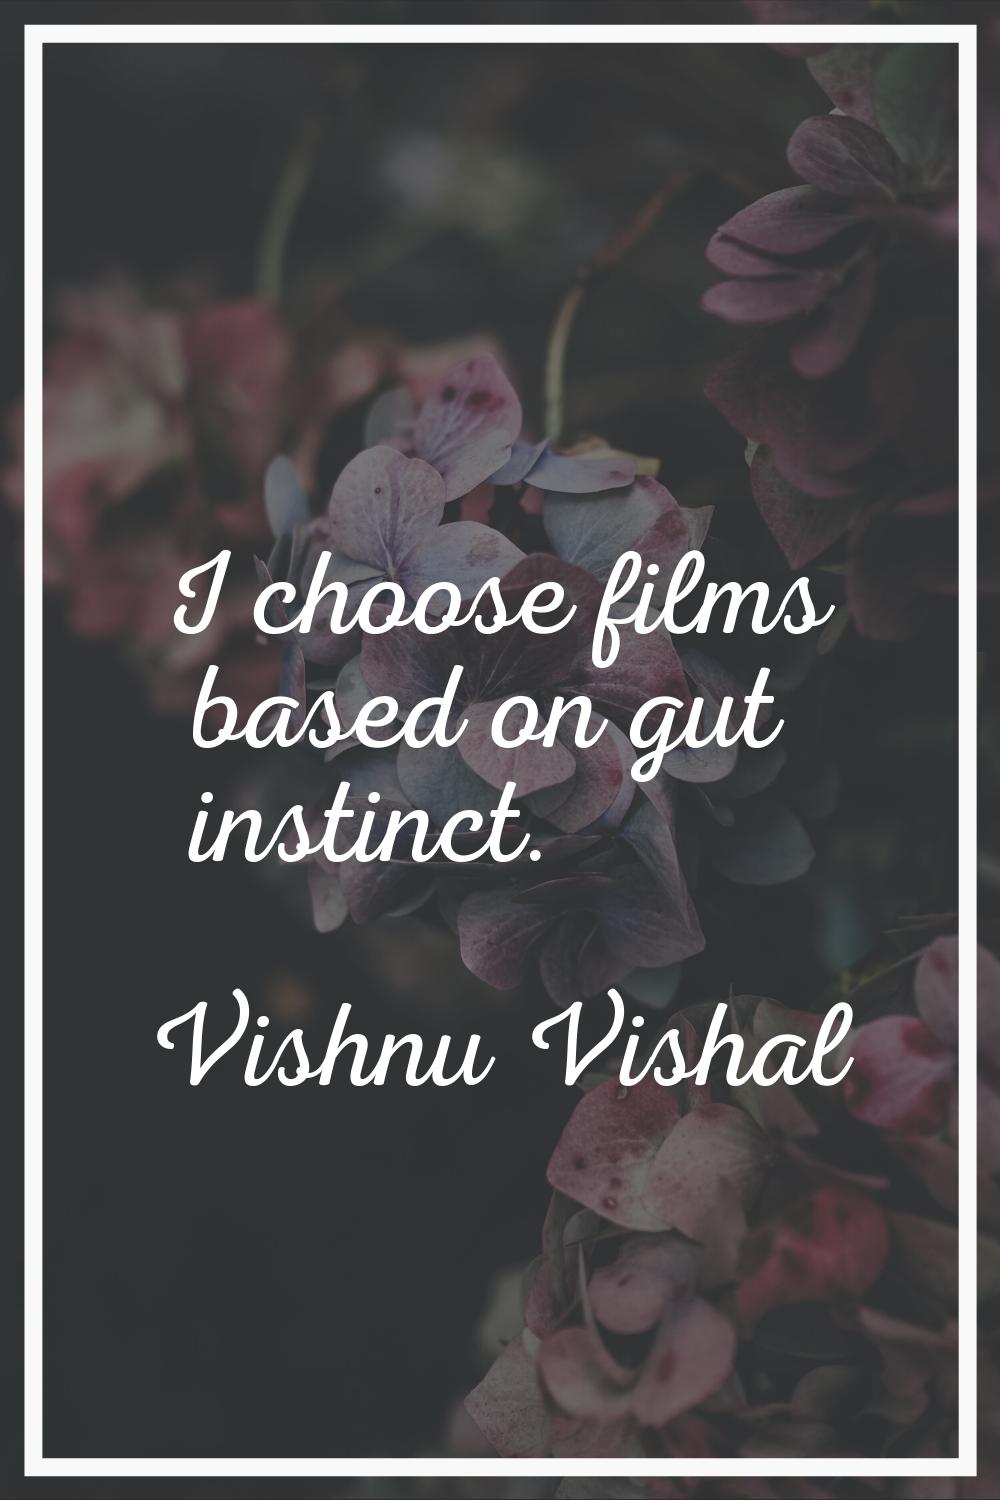 I choose films based on gut instinct.